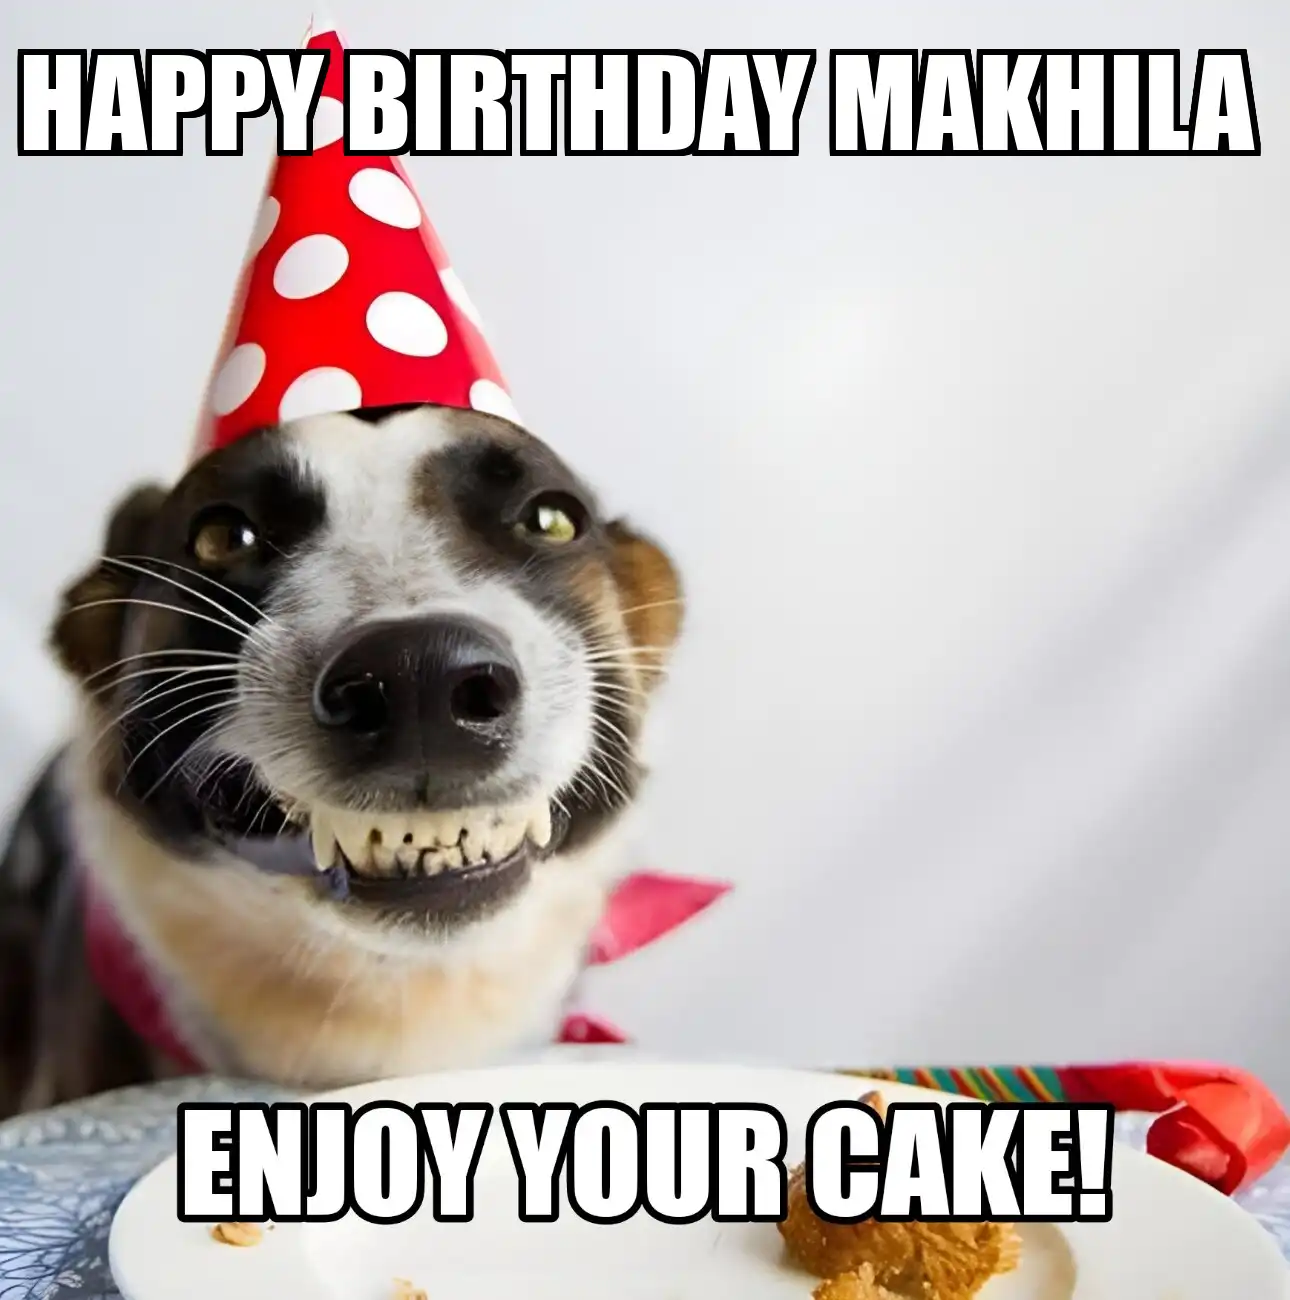 Happy Birthday Makhila Enjoy Your Cake Dog Meme